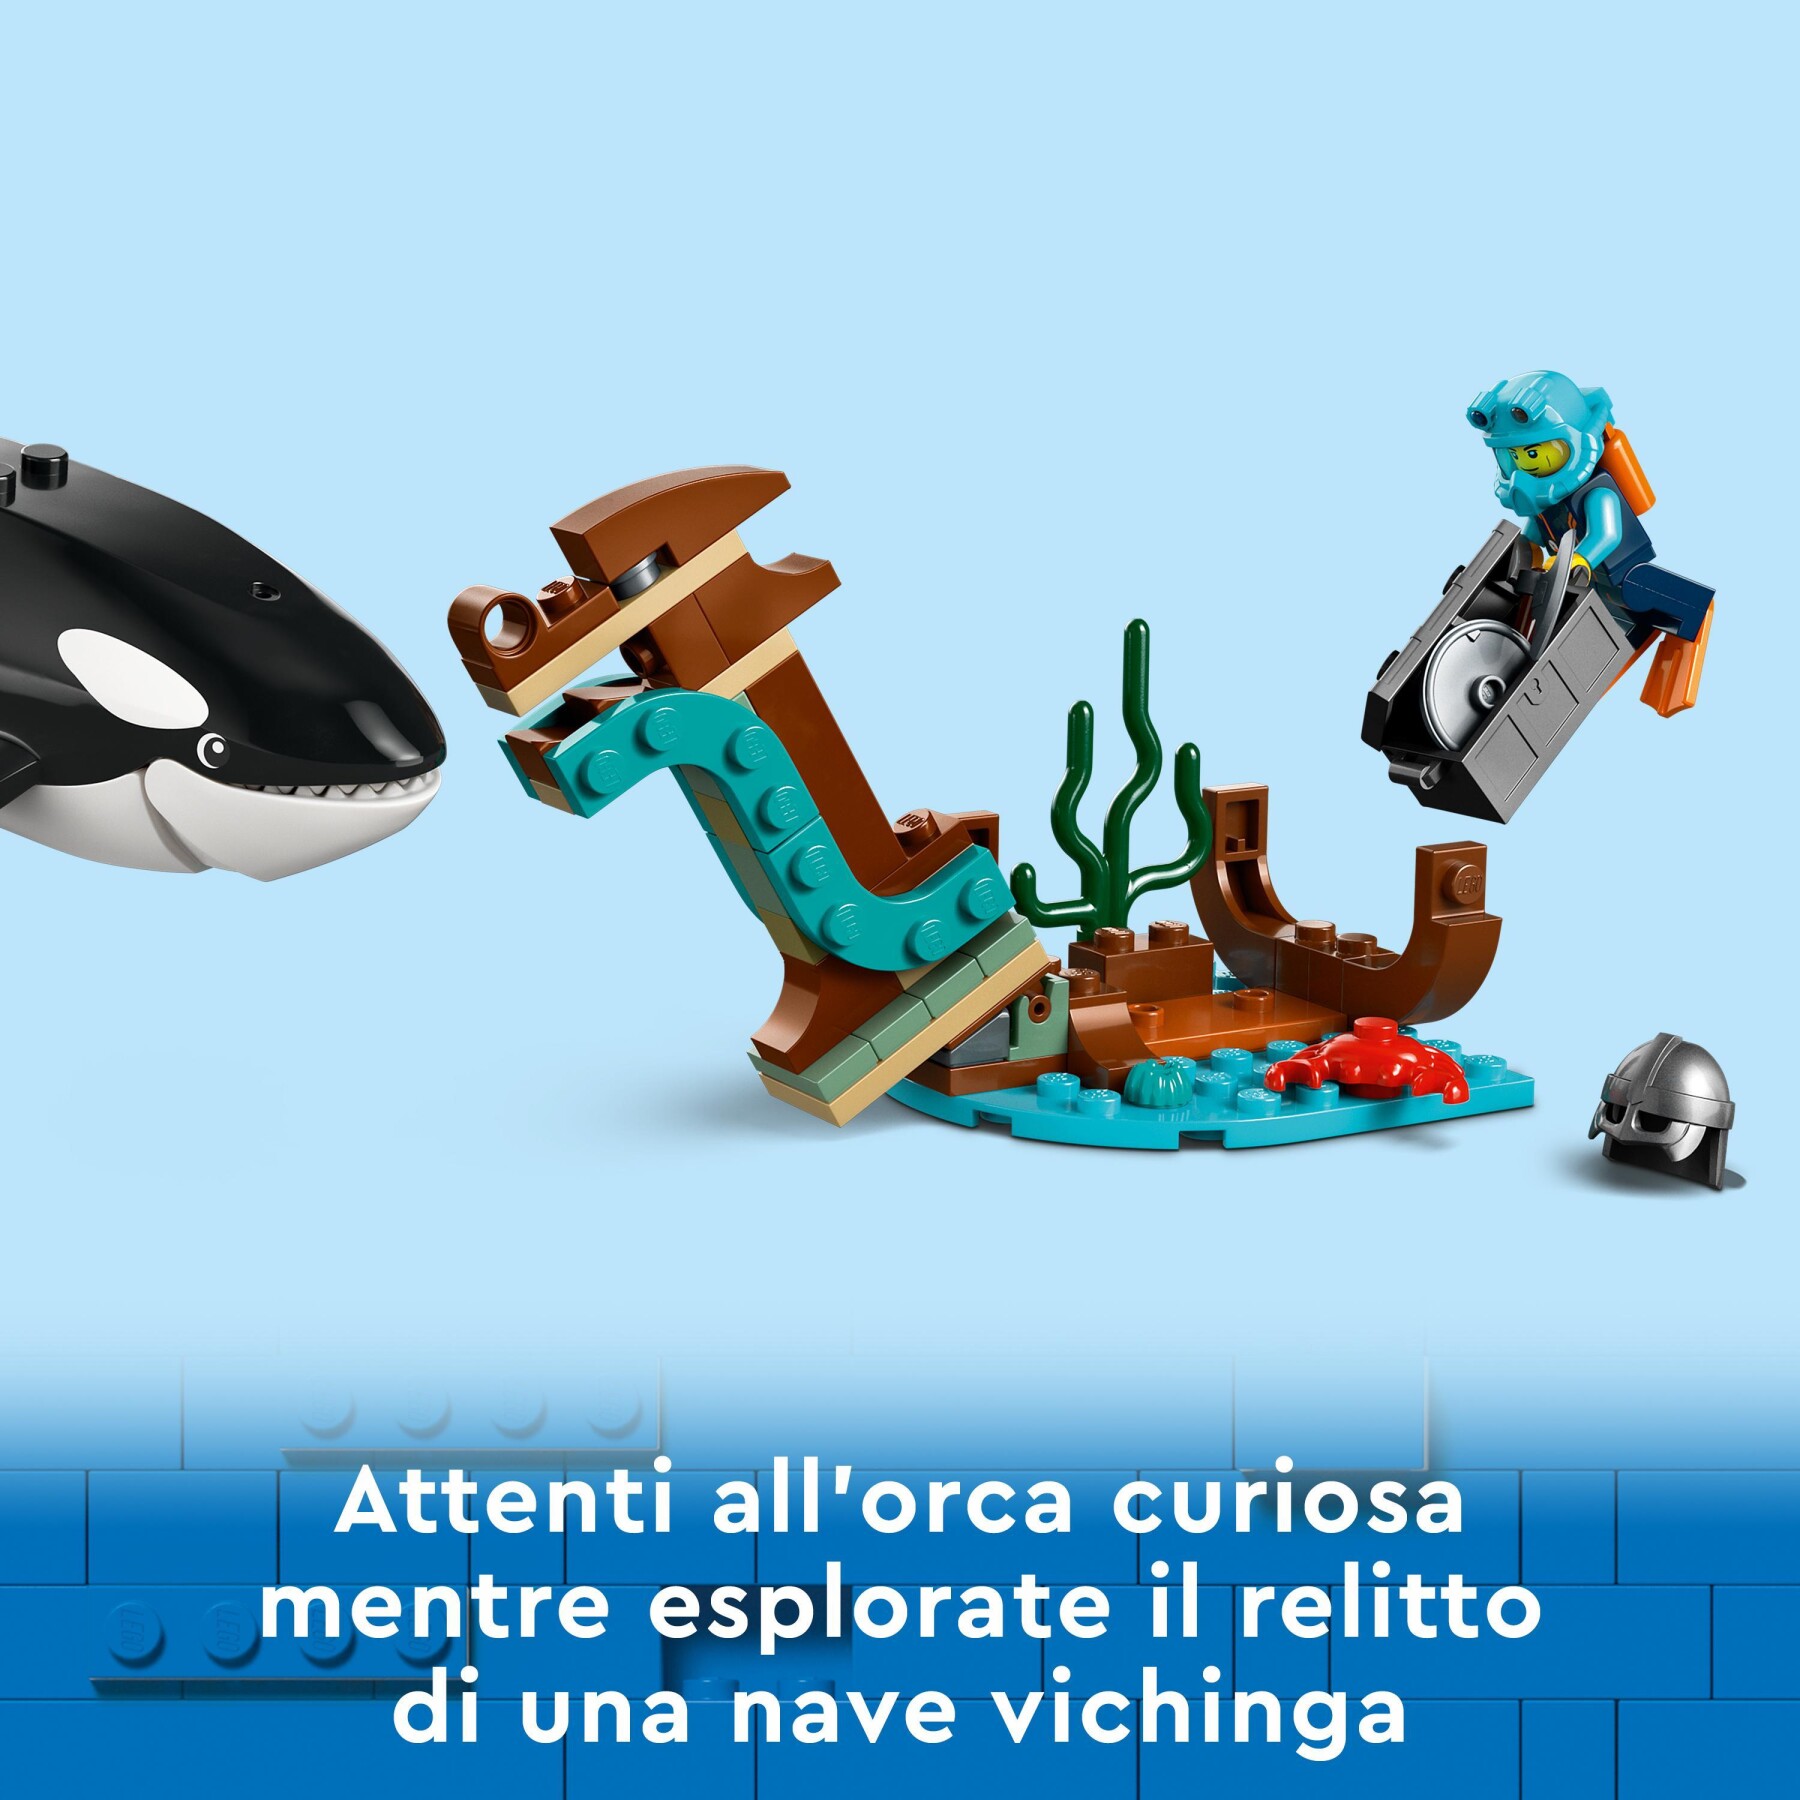 Lego city 60368 esploratore artico, grande nave giocattolo galleggiante con elicottero, gommone, sottomarino e relitto barca - LEGO CITY